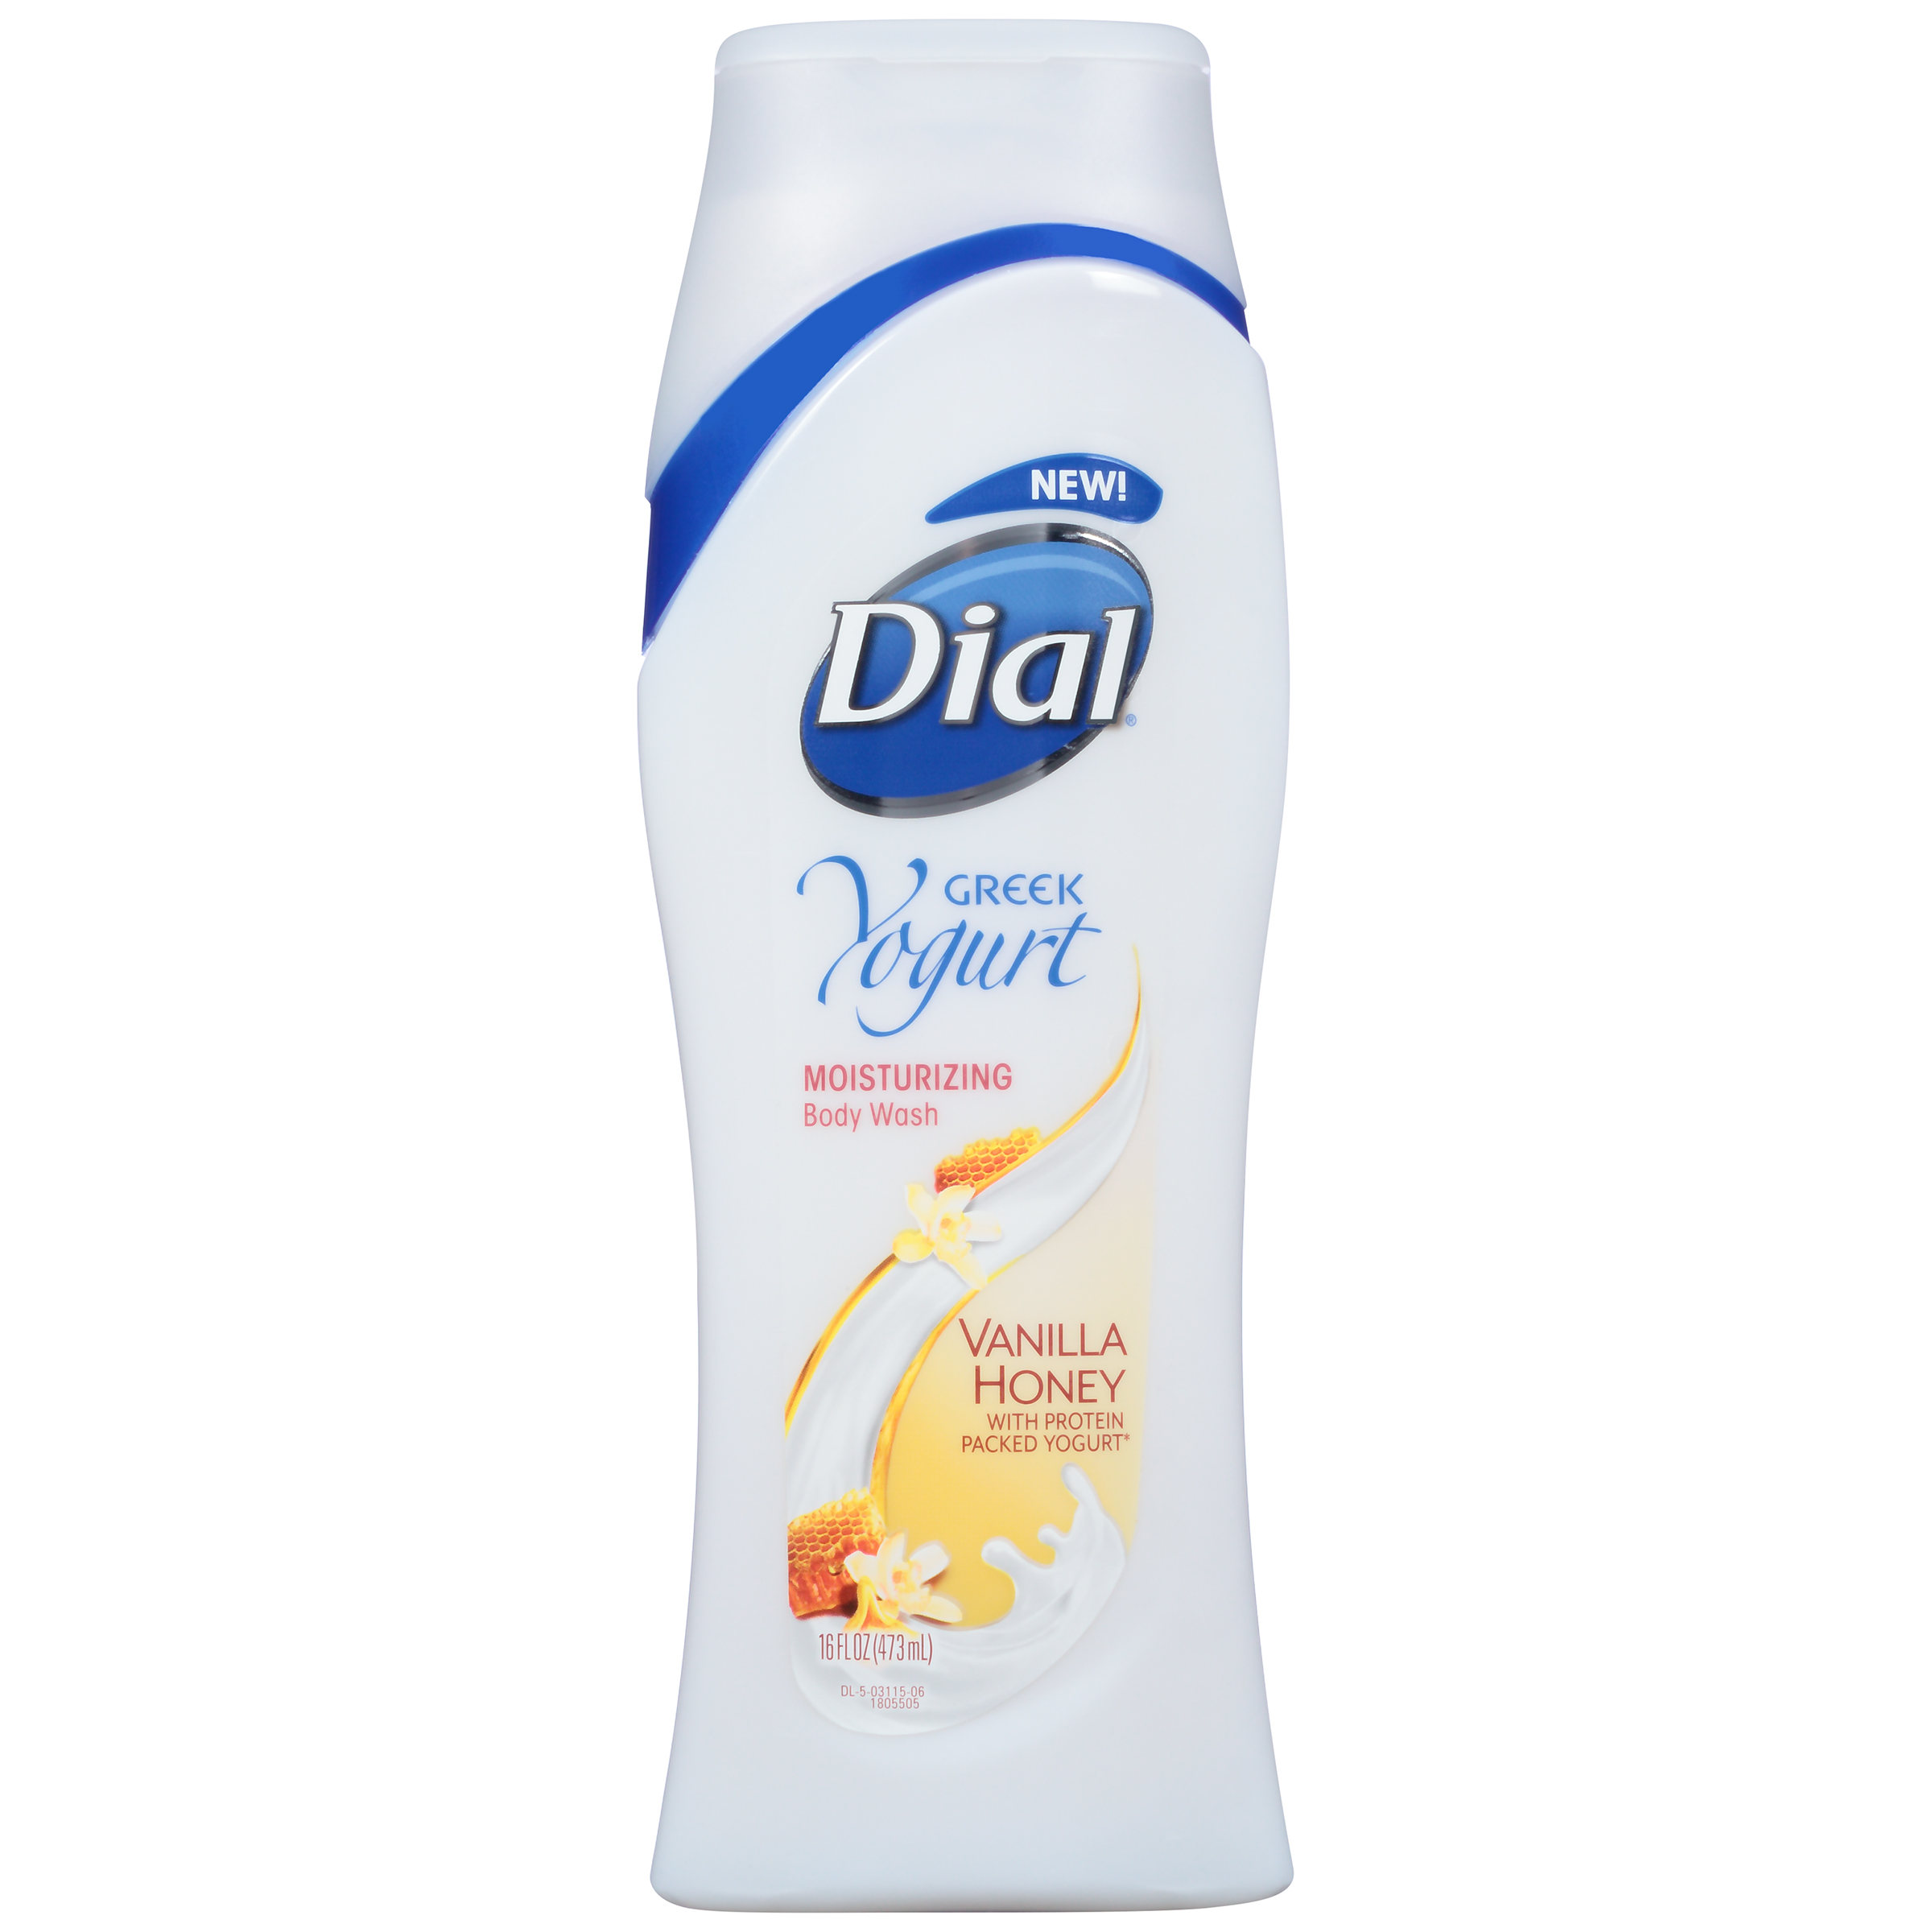 Dial Yogurt Body Wash, Nourishing, Vanilla Honey, 16 fl oz (473 ml)